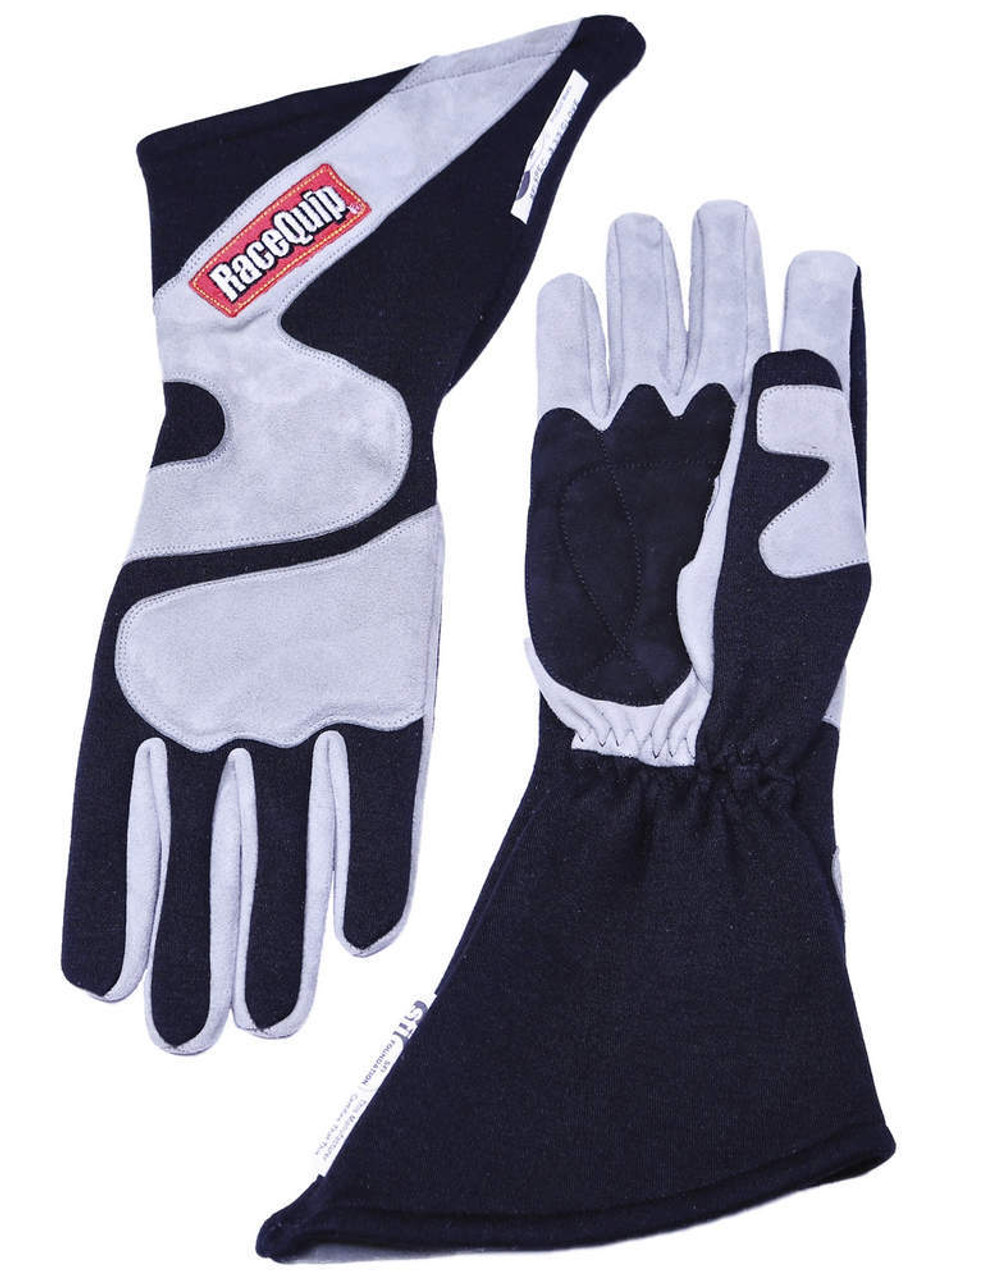 Gloves Outseam Black/ Gray XX-Large SFI-5